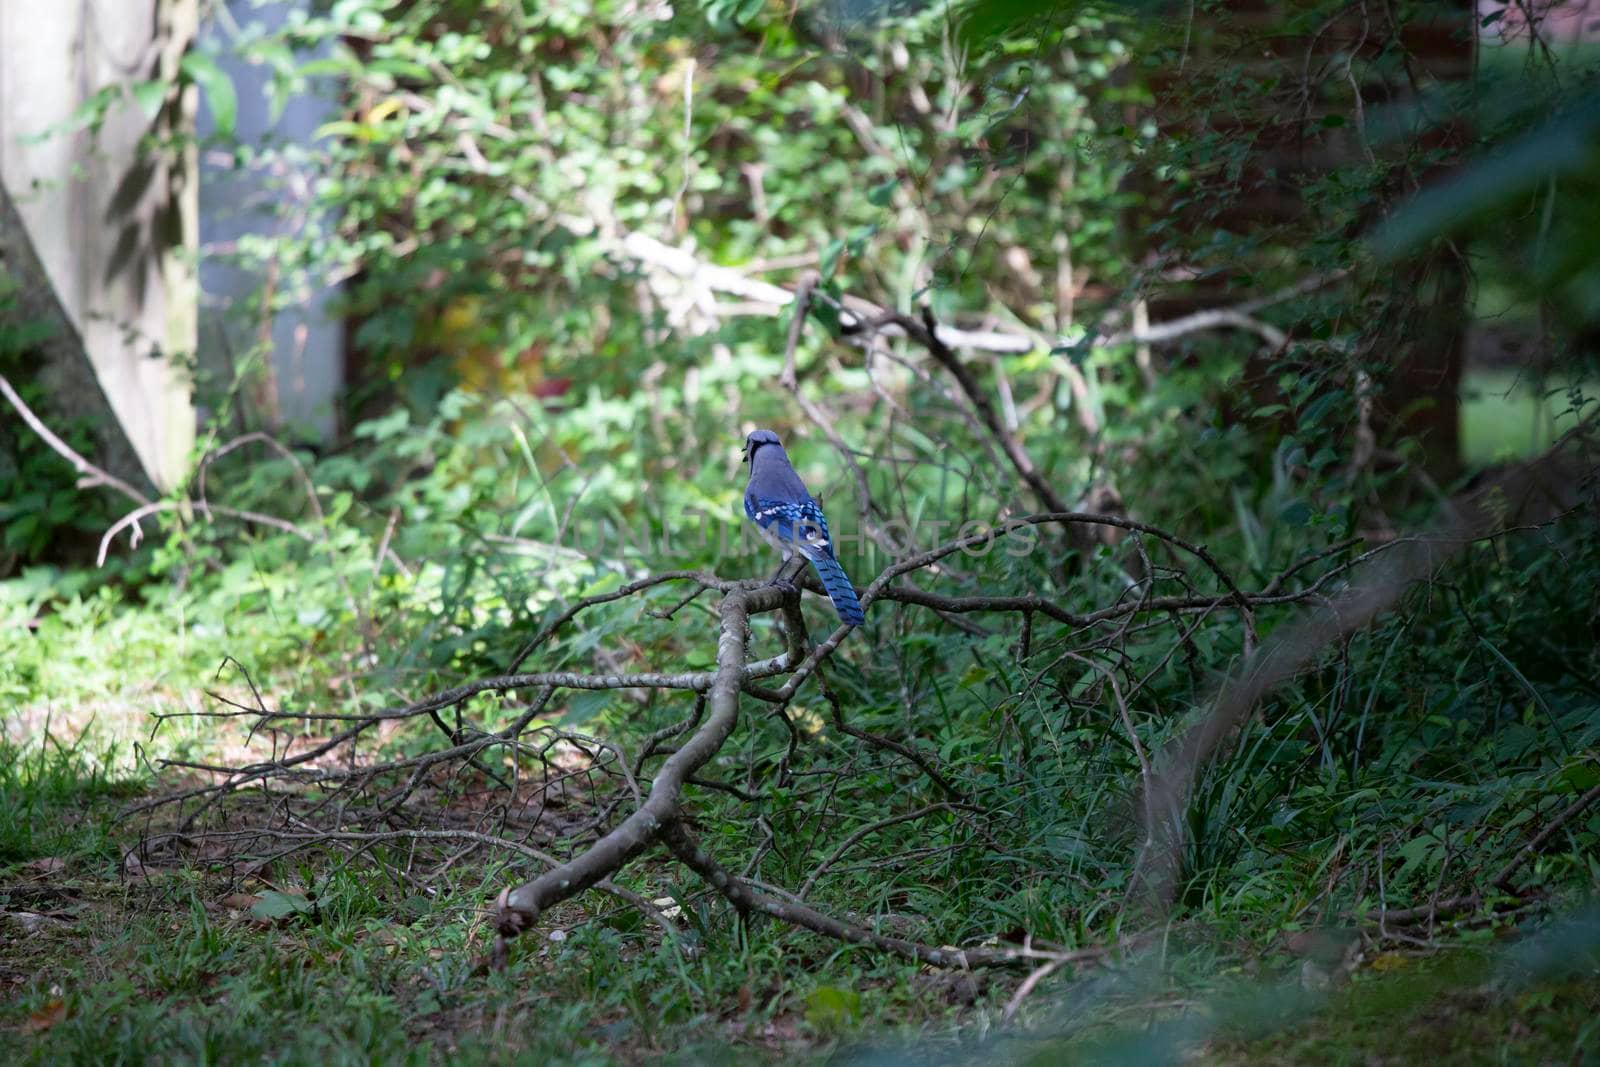 Blue jay (Cyanocitta cristata) calling from its perch on a fallen limb